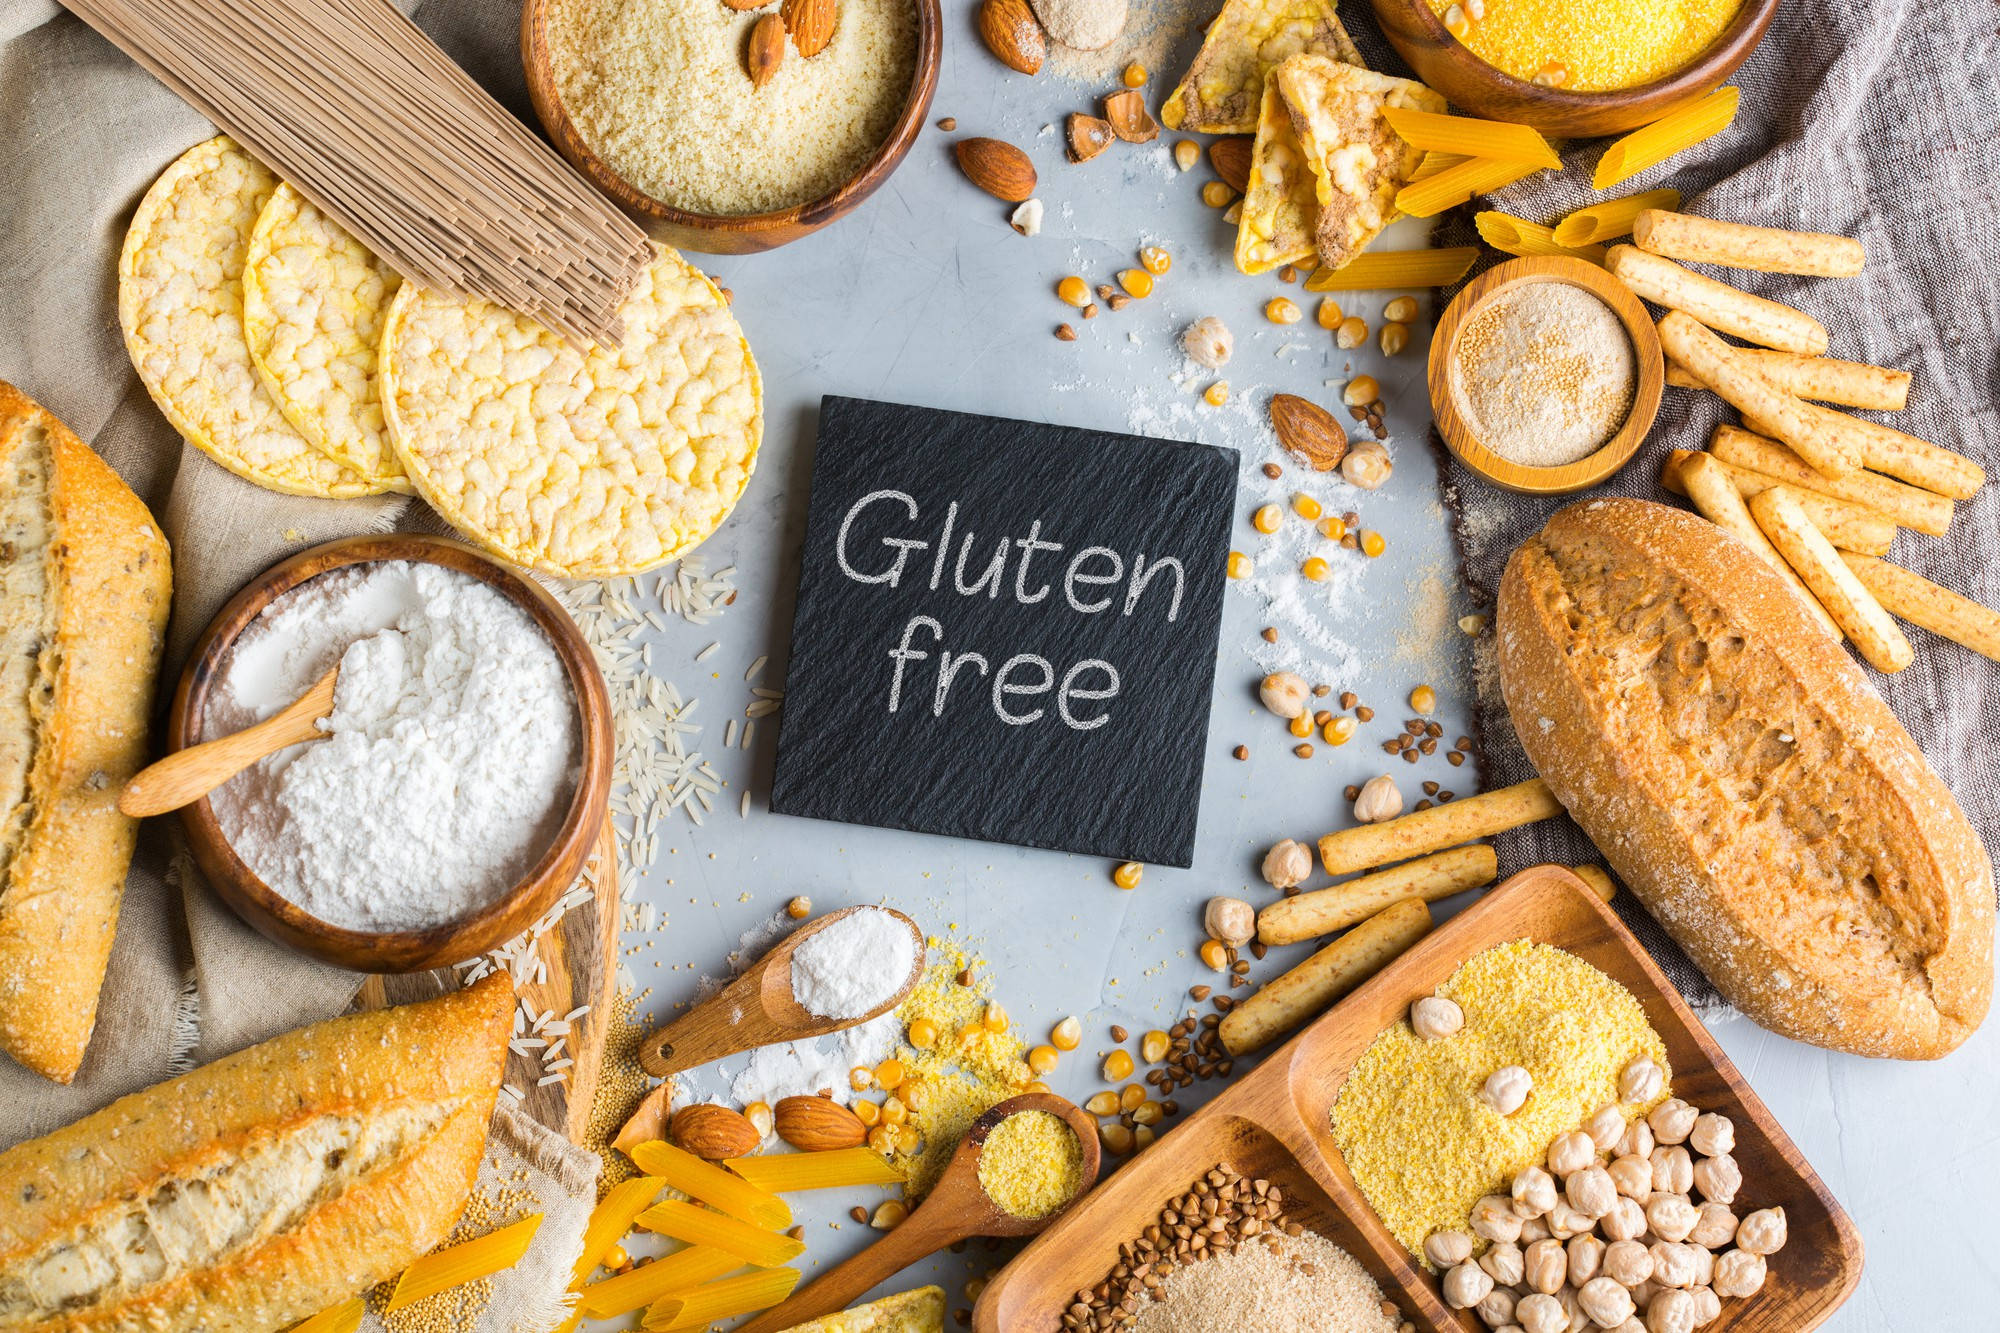 Glutenfreie Küche: Gesunde und leckere Alternativen für Menschen mit Glutenintoleranz